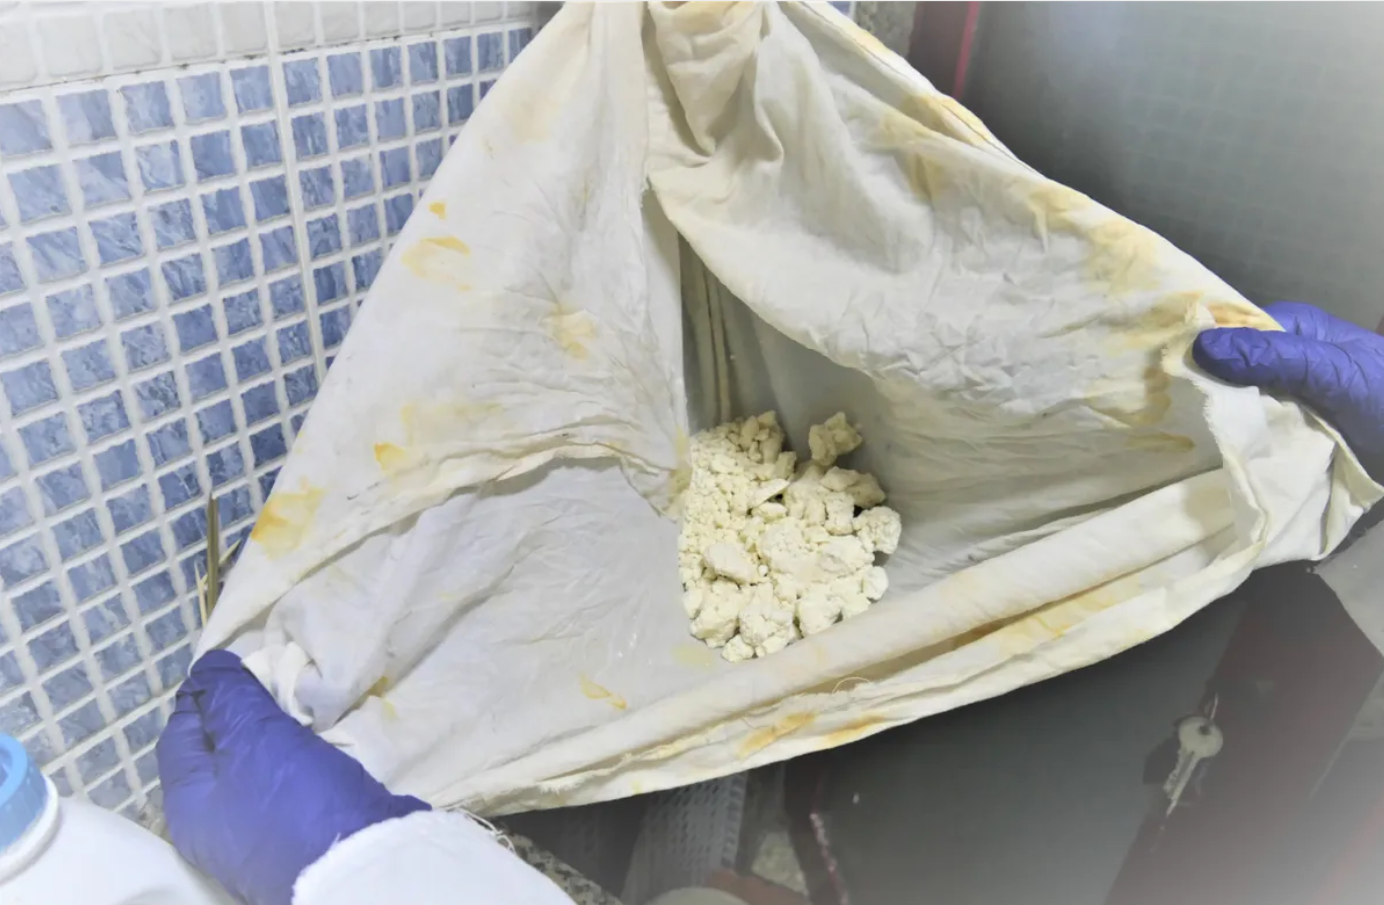 Brasileiros comandavam laboratório de cocaína em Portugal que faturava R$ 52 milhões por semana